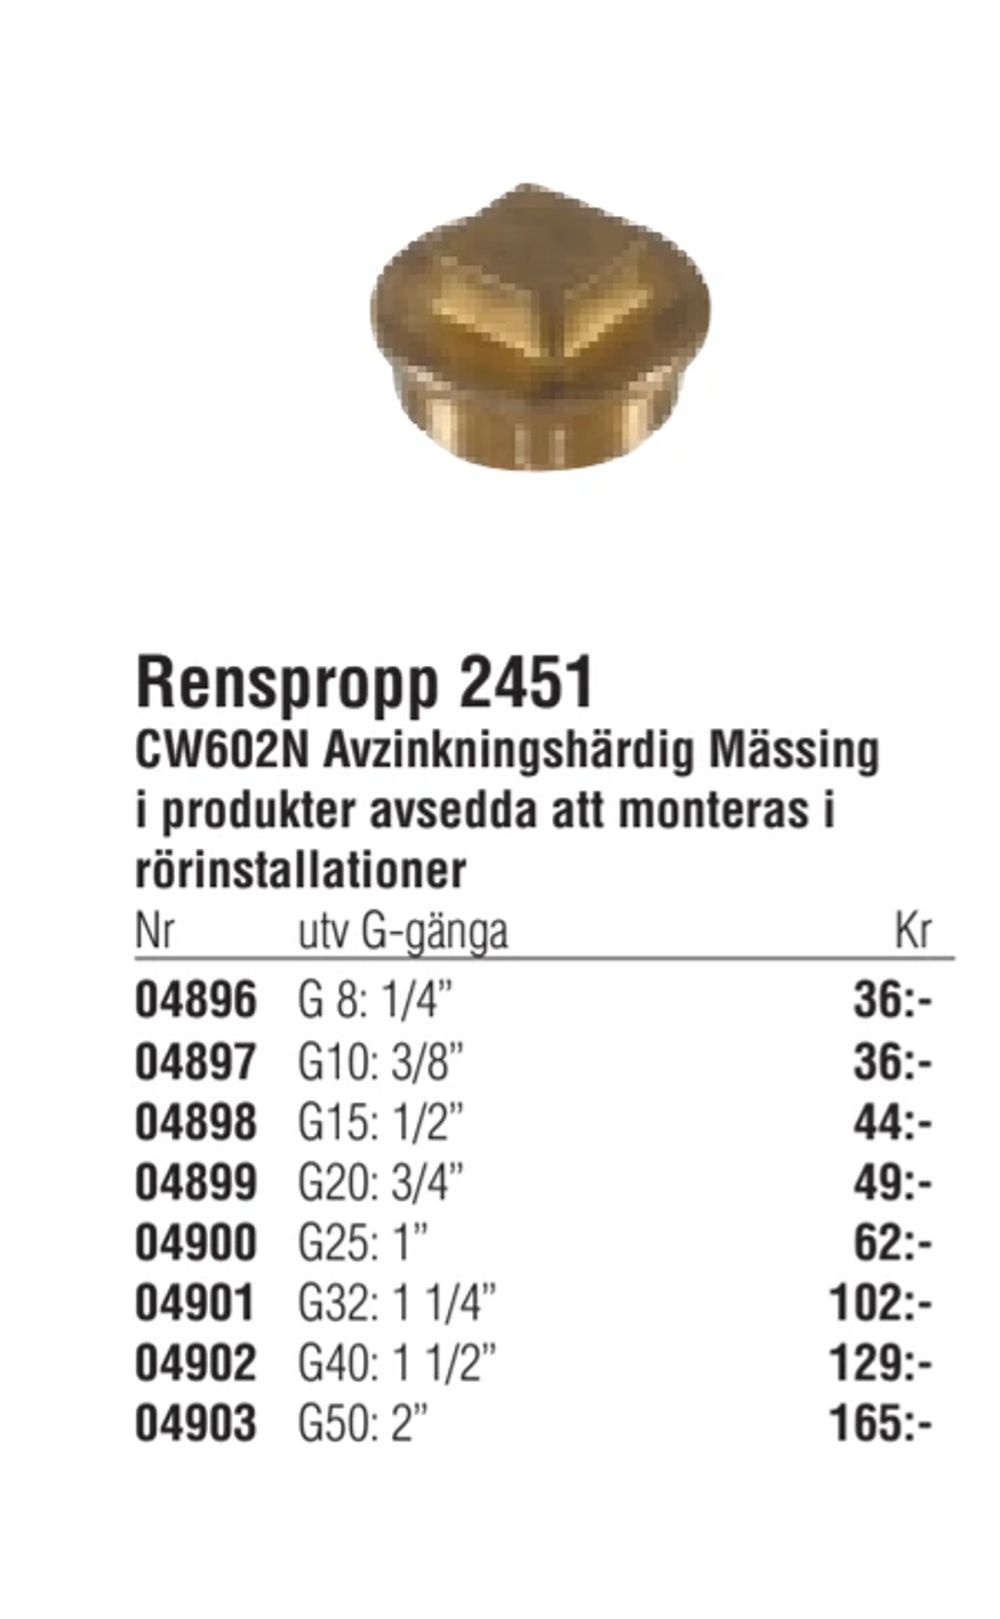 Erbjudanden på Renspropp 2451 från Erlandsons Brygga för 36 kr